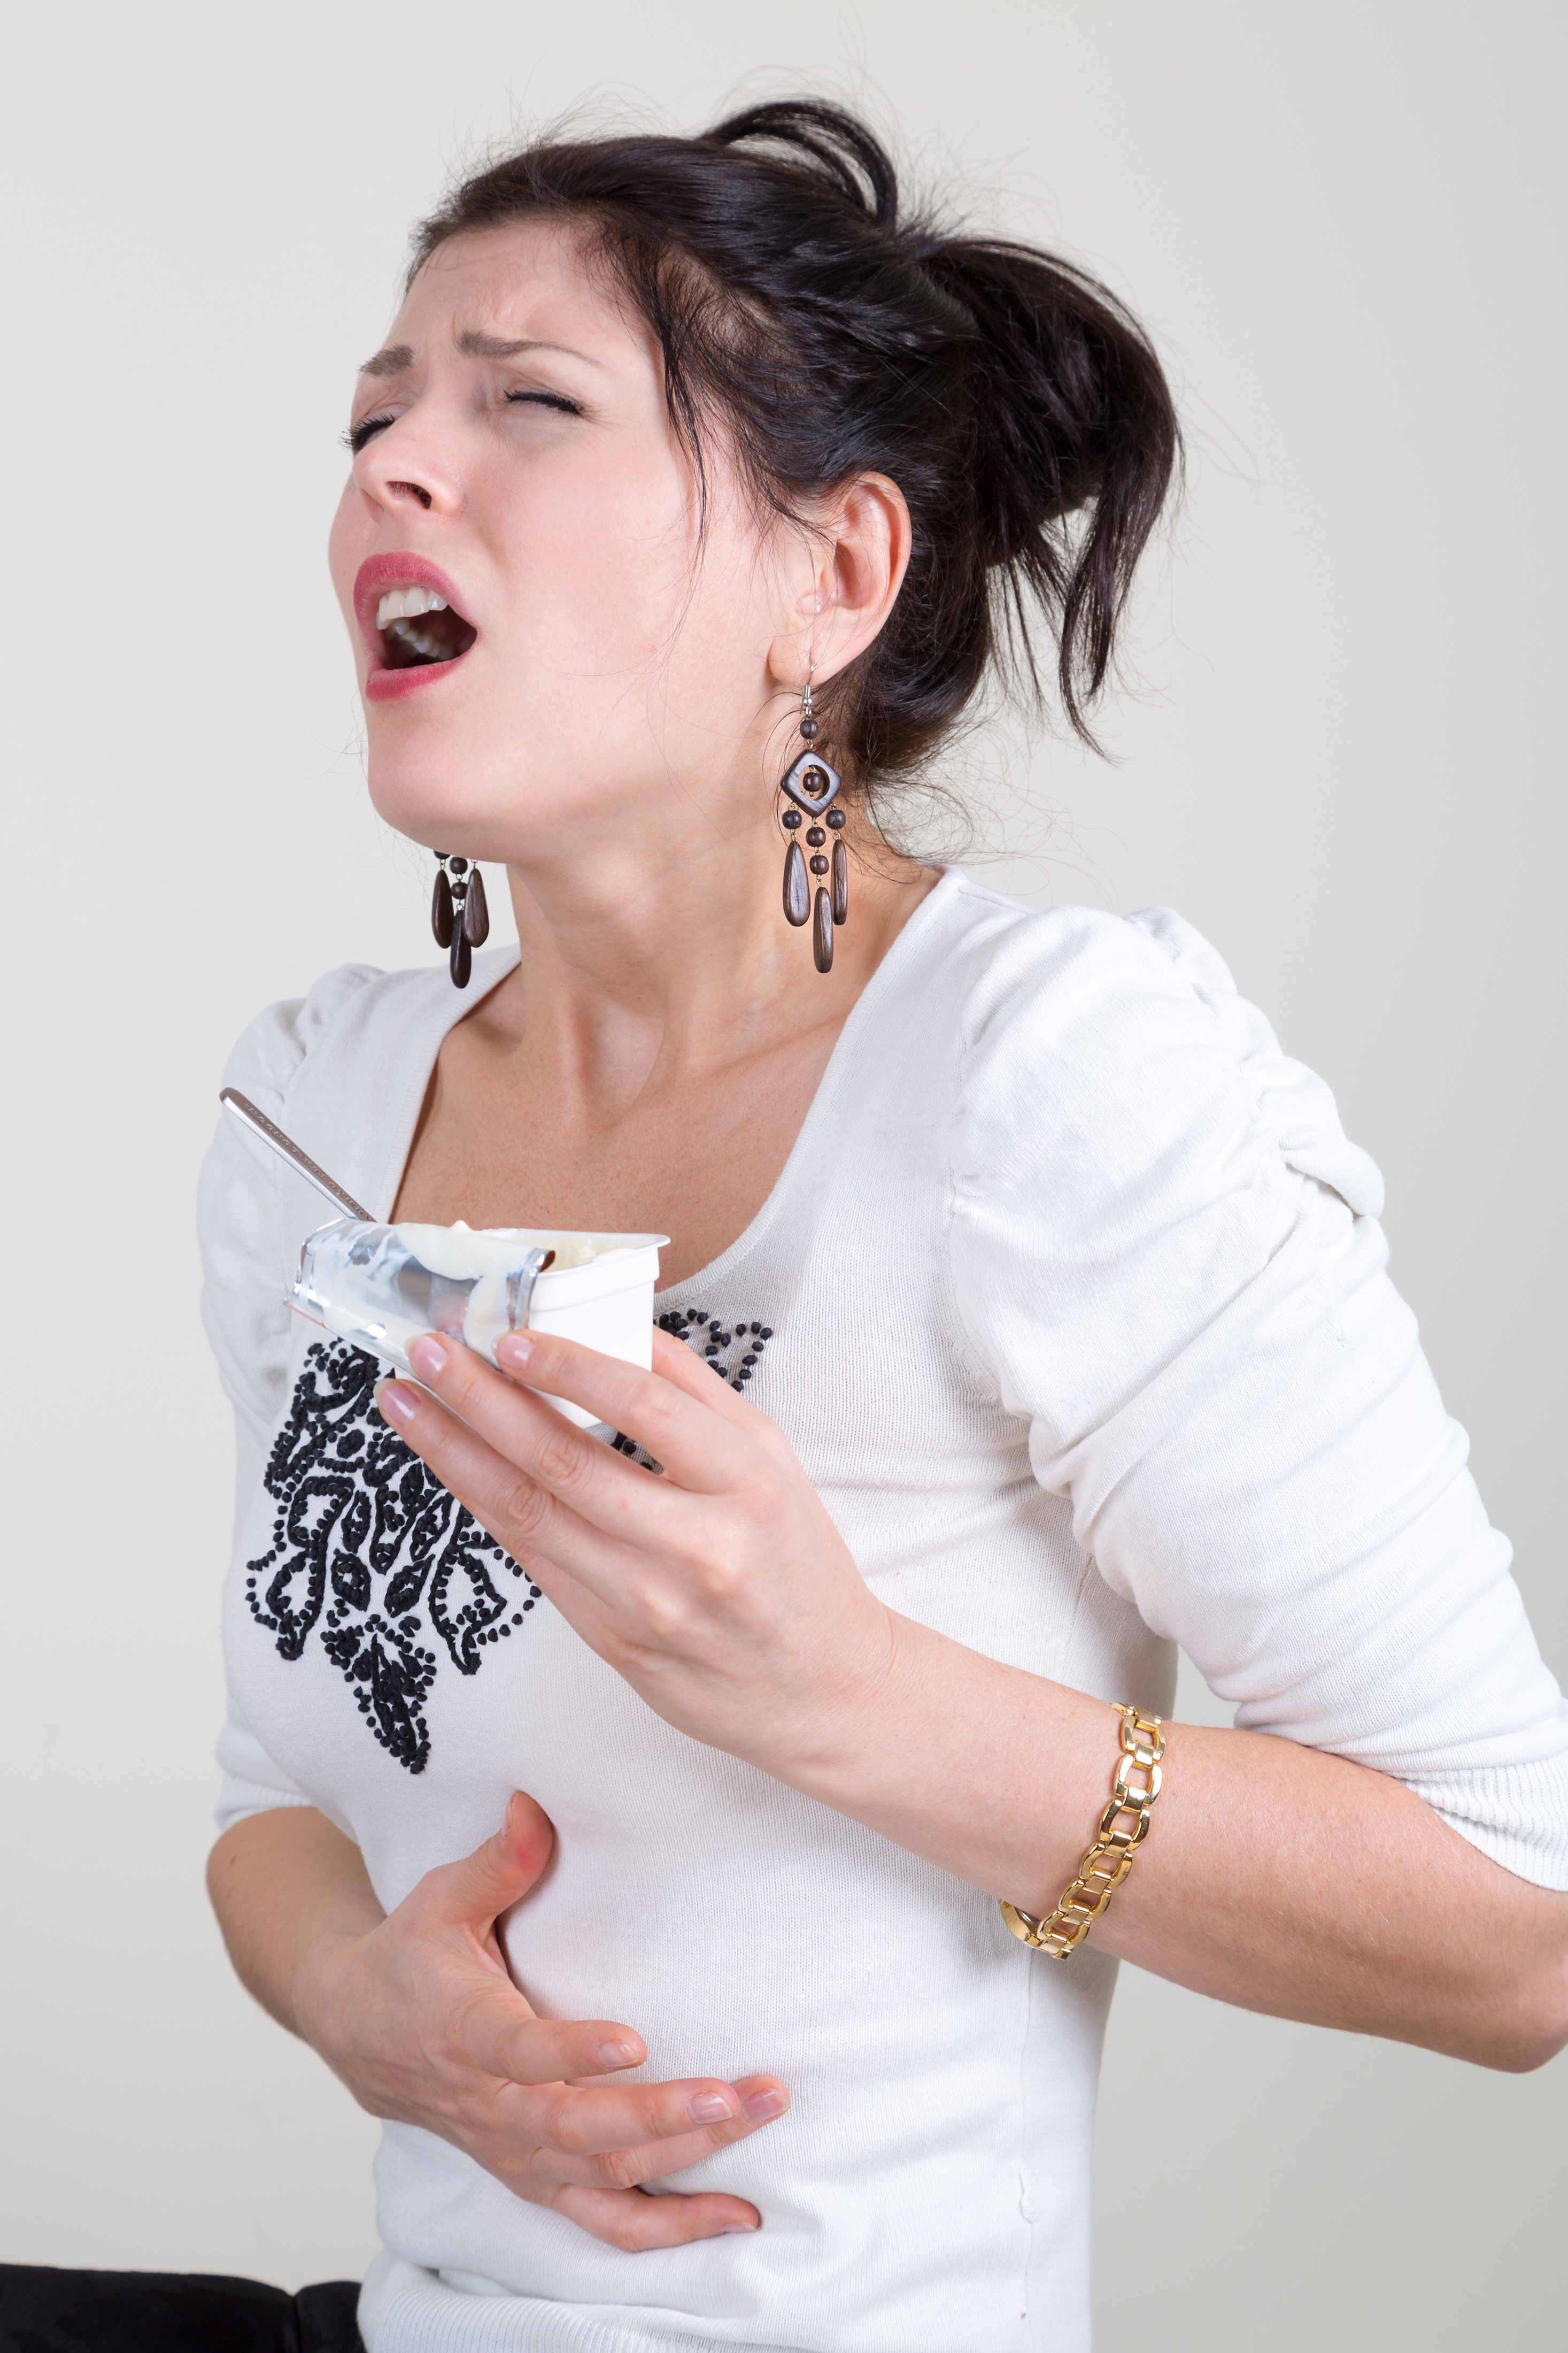 woman eating yogurt while on antibiotics